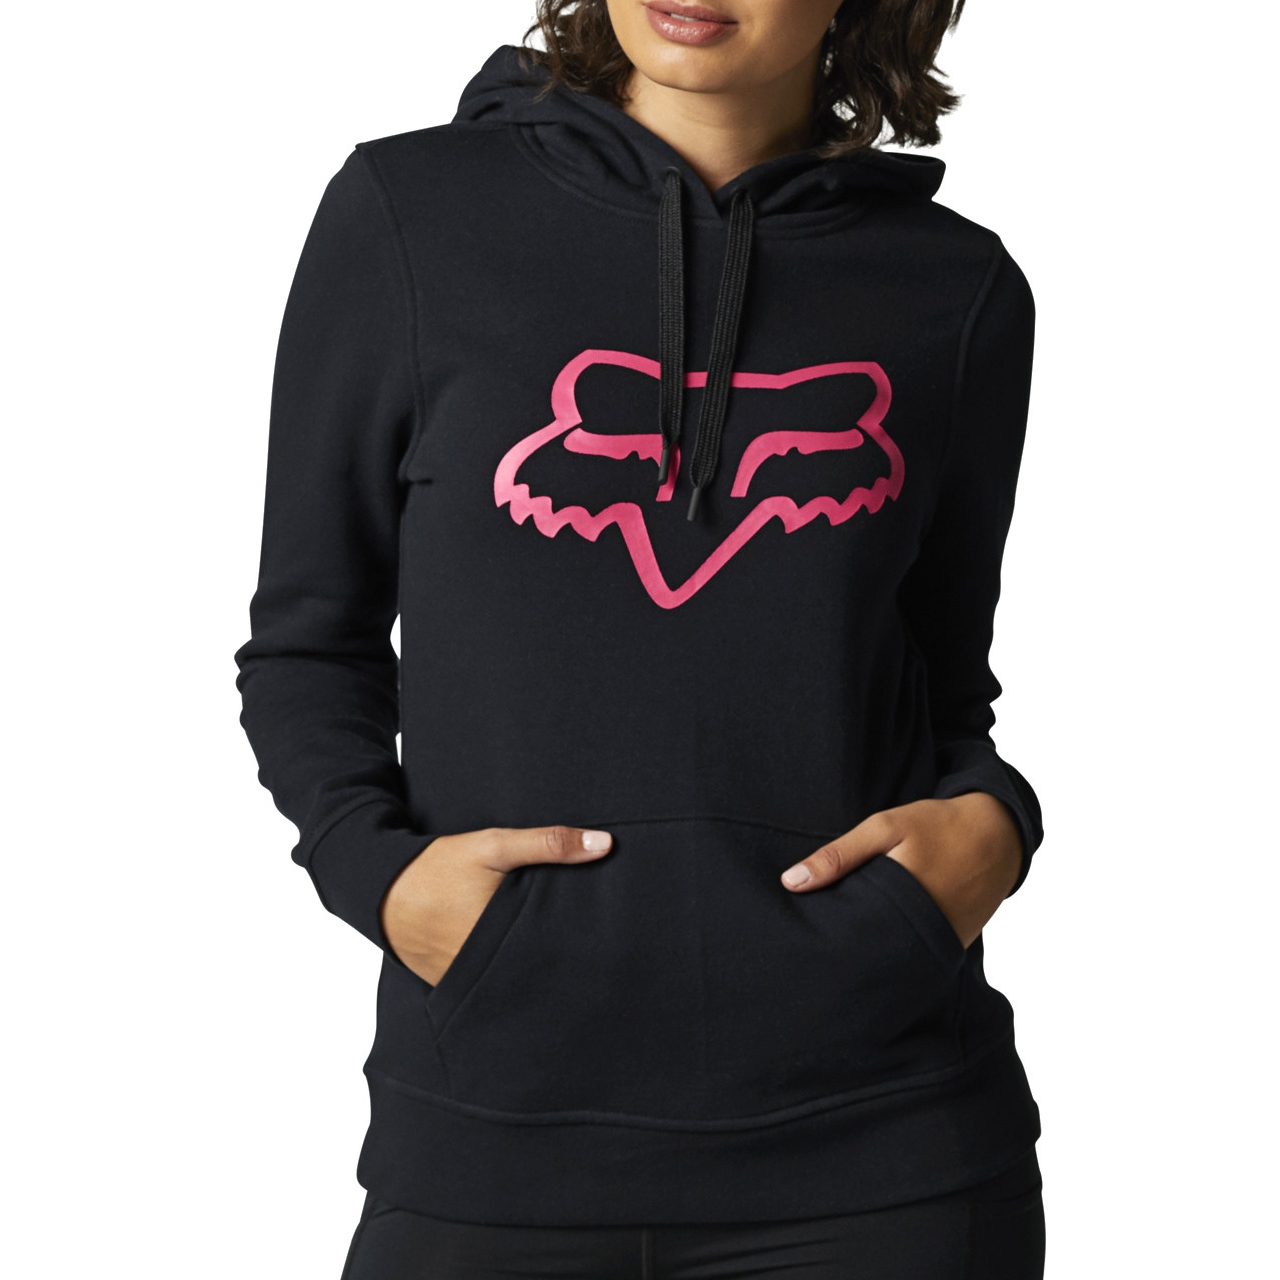 Produktbild von FOX Boundary Fleece Damenpullover - schwarz/pink